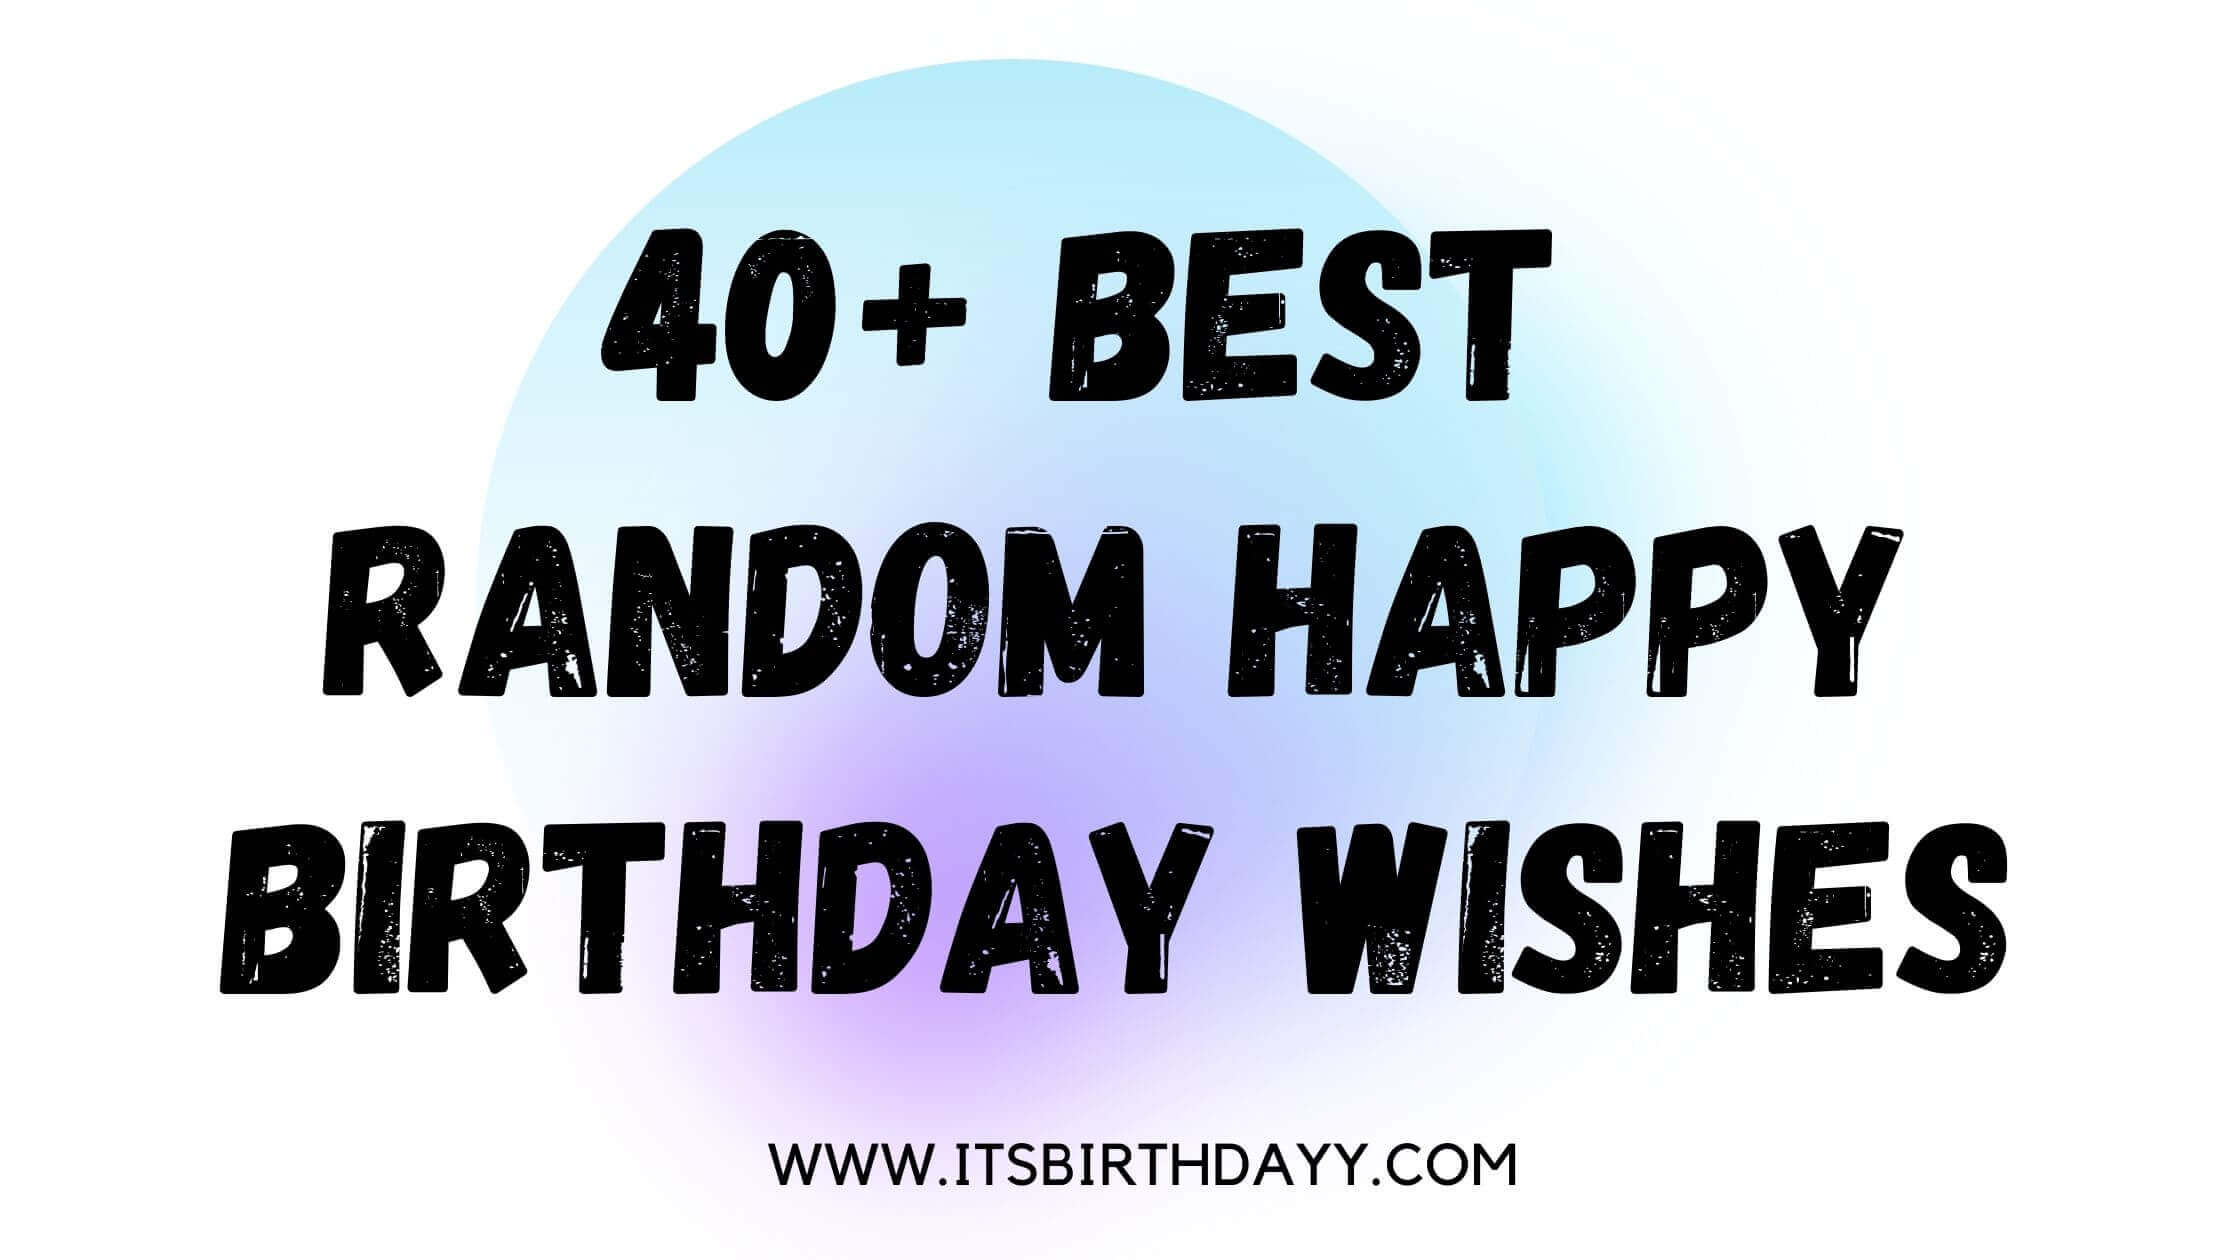 Best Random Happy Birthday wishes